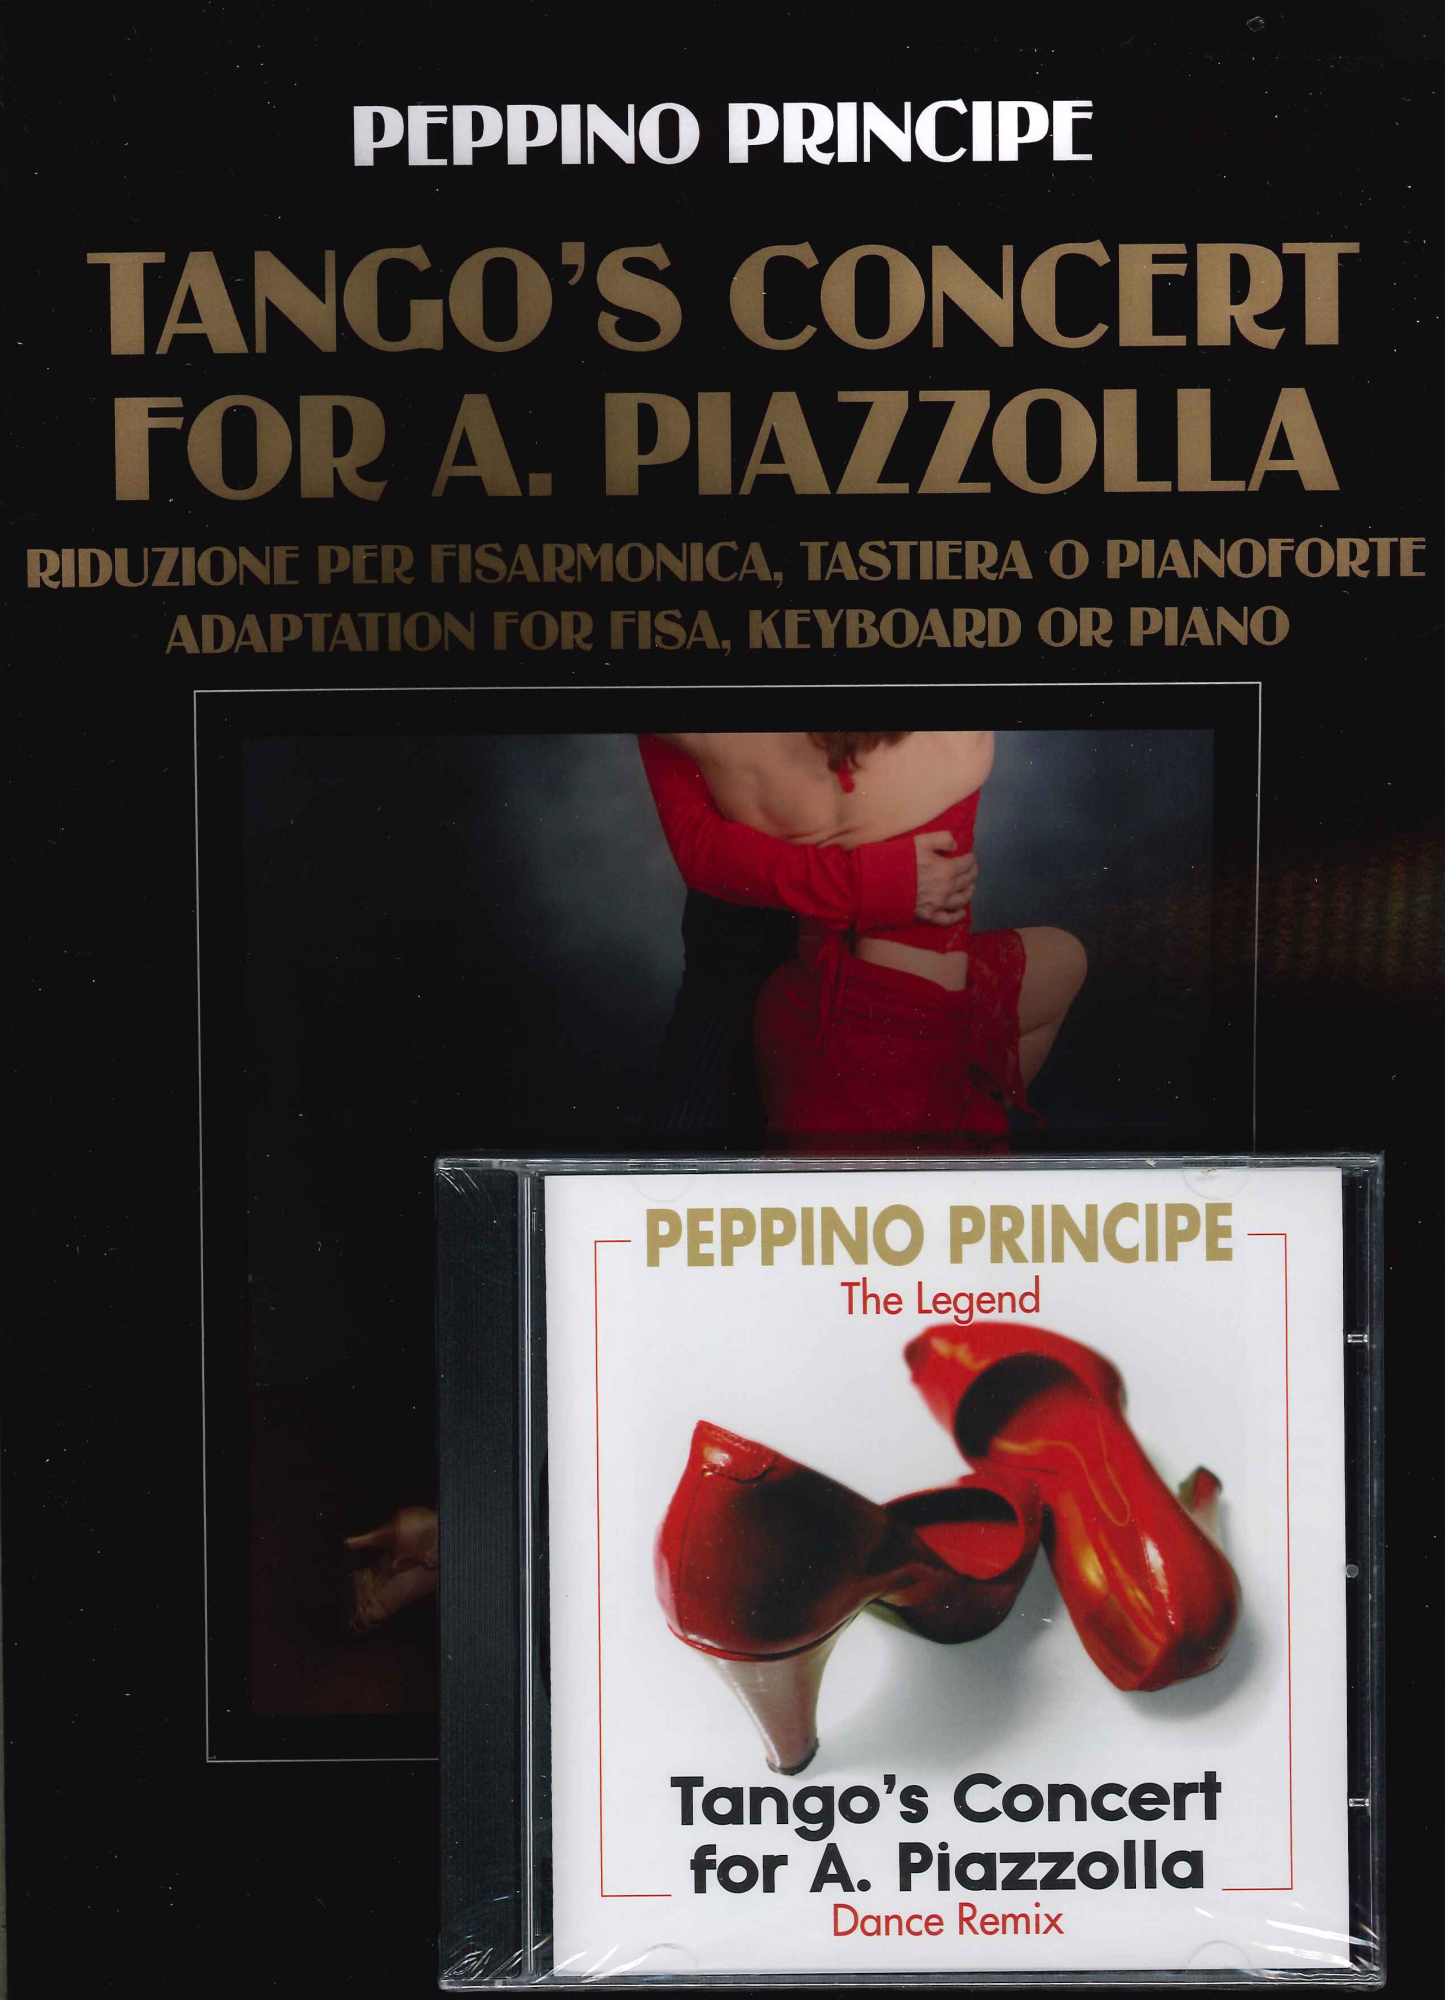 Libri Peppino Principe - Tango'S Concert For A. Piazzolla. Riduzione Per Fisarmonica, Tastiera O Pianoforte. Adaptation For Fisa, Keyboard Or Piano. NUOVO SIGILLATO, EDIZIONE DEL 01/01/2020 SUBITO DISPONIBILE